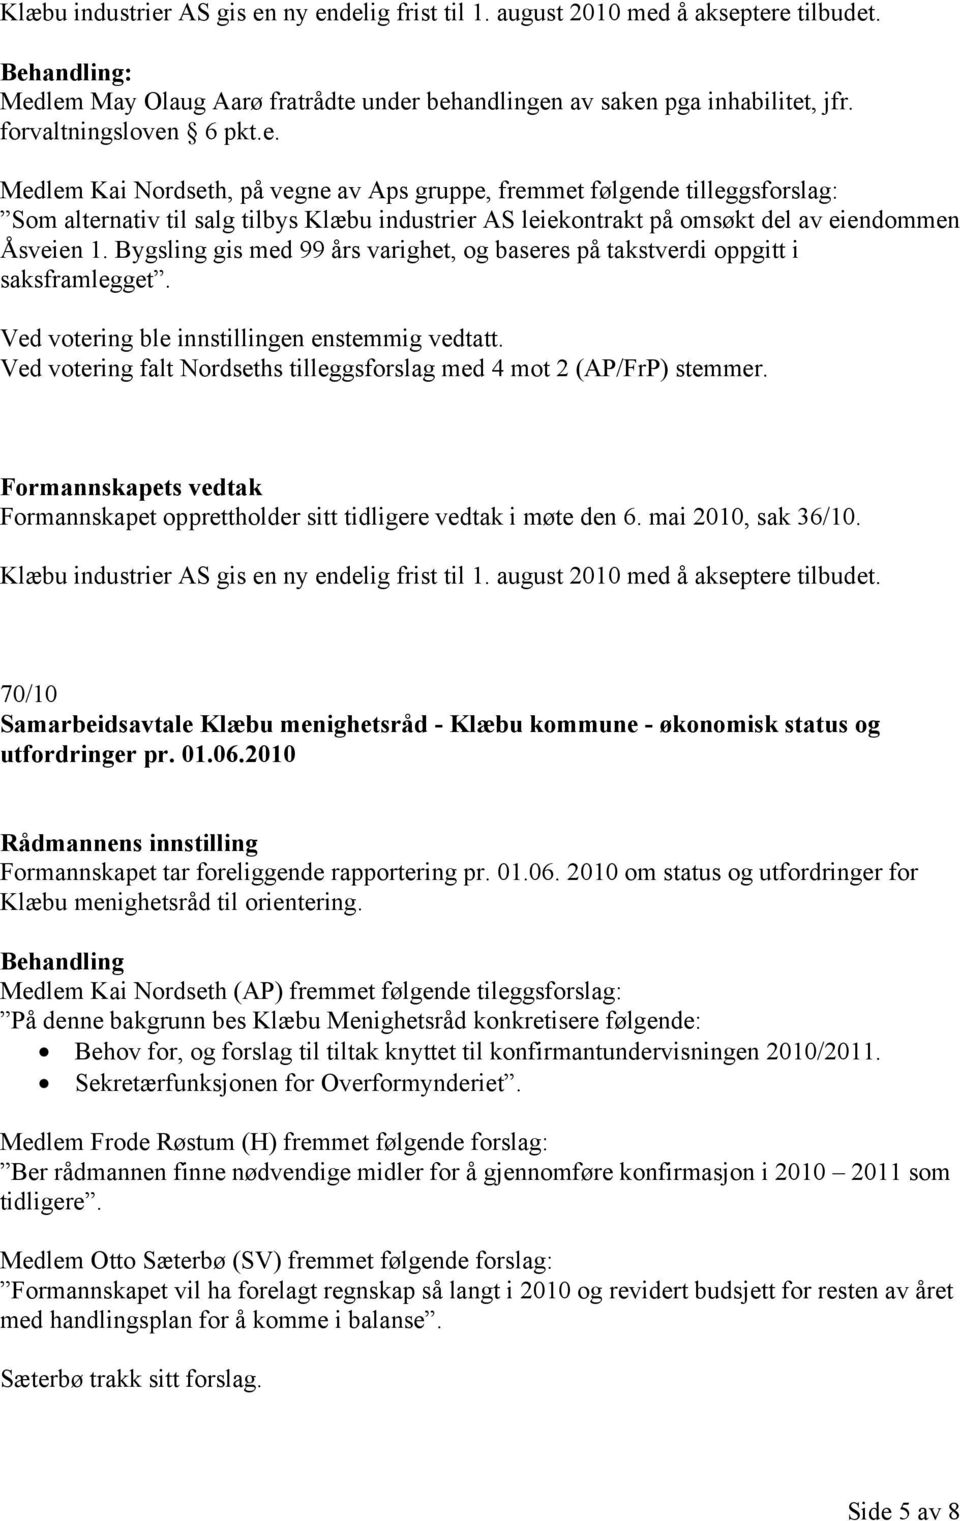 Ved votering falt Nordseths tilleggsforslag med 4 mot 2 (AP/FrP) stemmer. Formannskapet opprettholder sitt tidligere vedtak i møte den 6. mai 2010, sak 36/10.